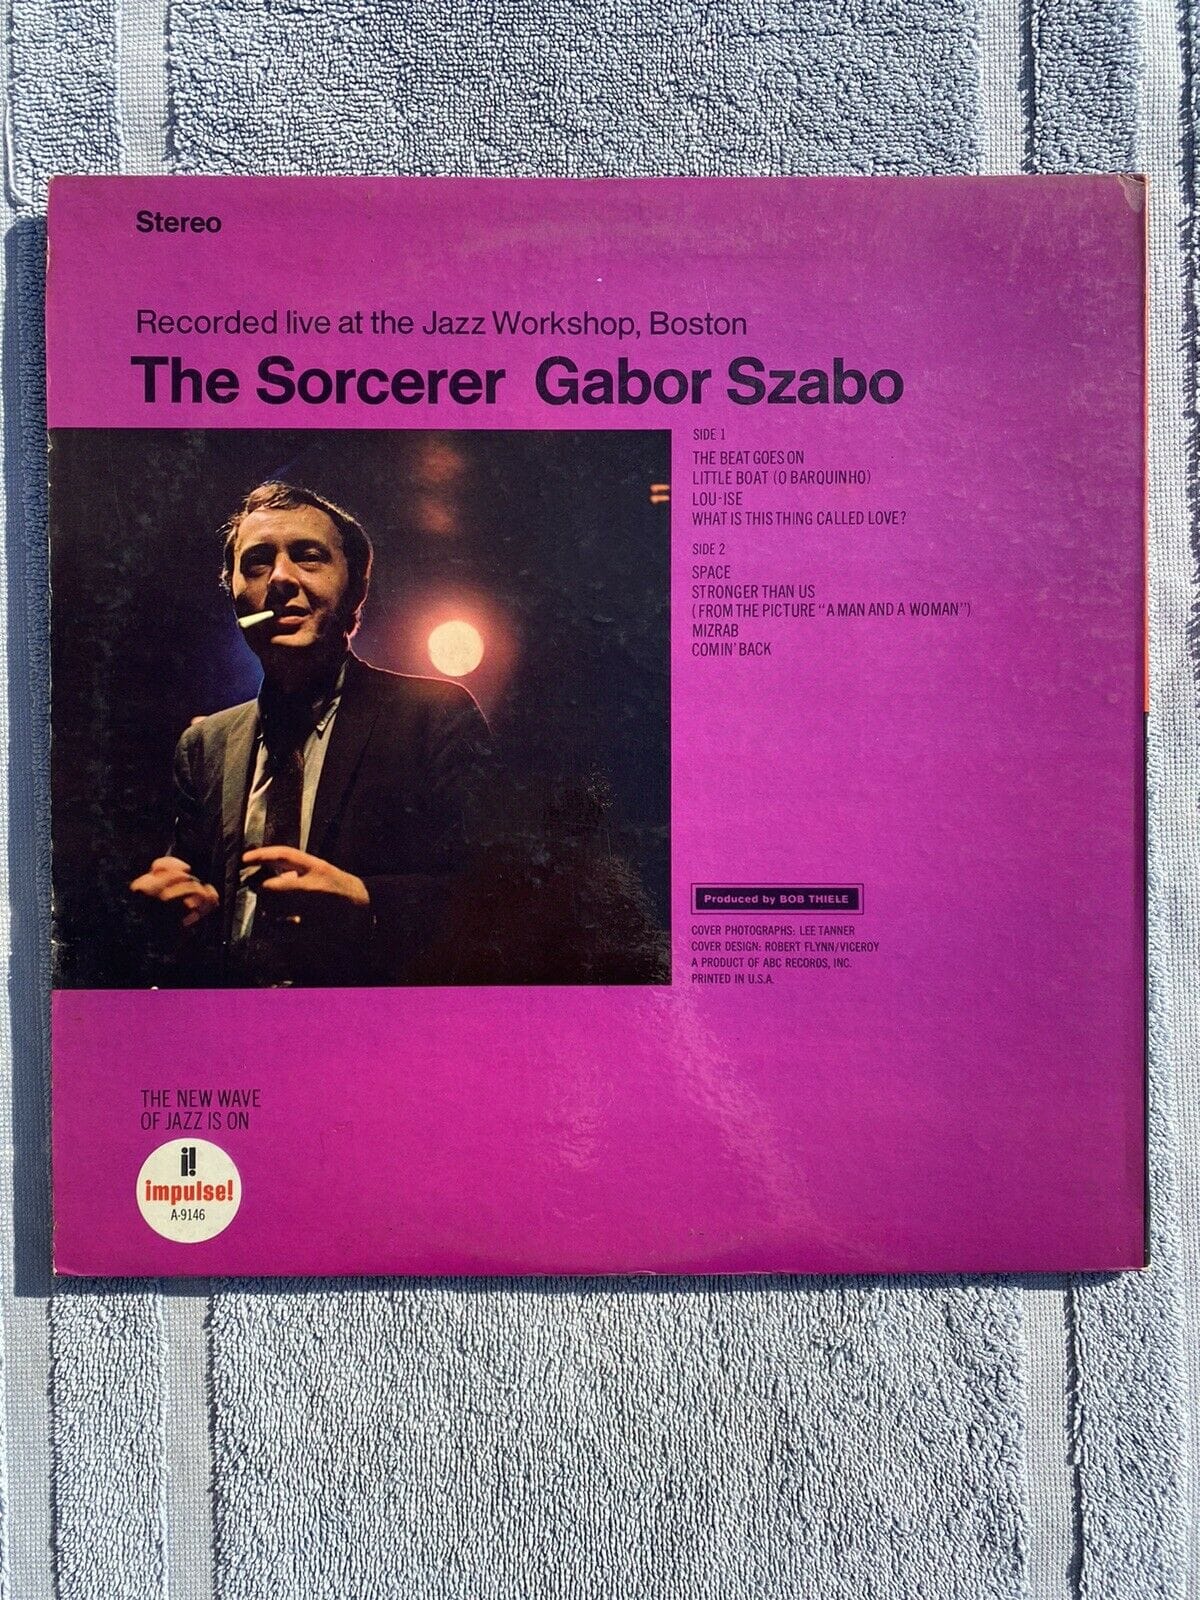 Gabor Szabo OG 1967 Stereo The Sorcerer RARE JAZZ IMPULSE LP Vinyl Record 2